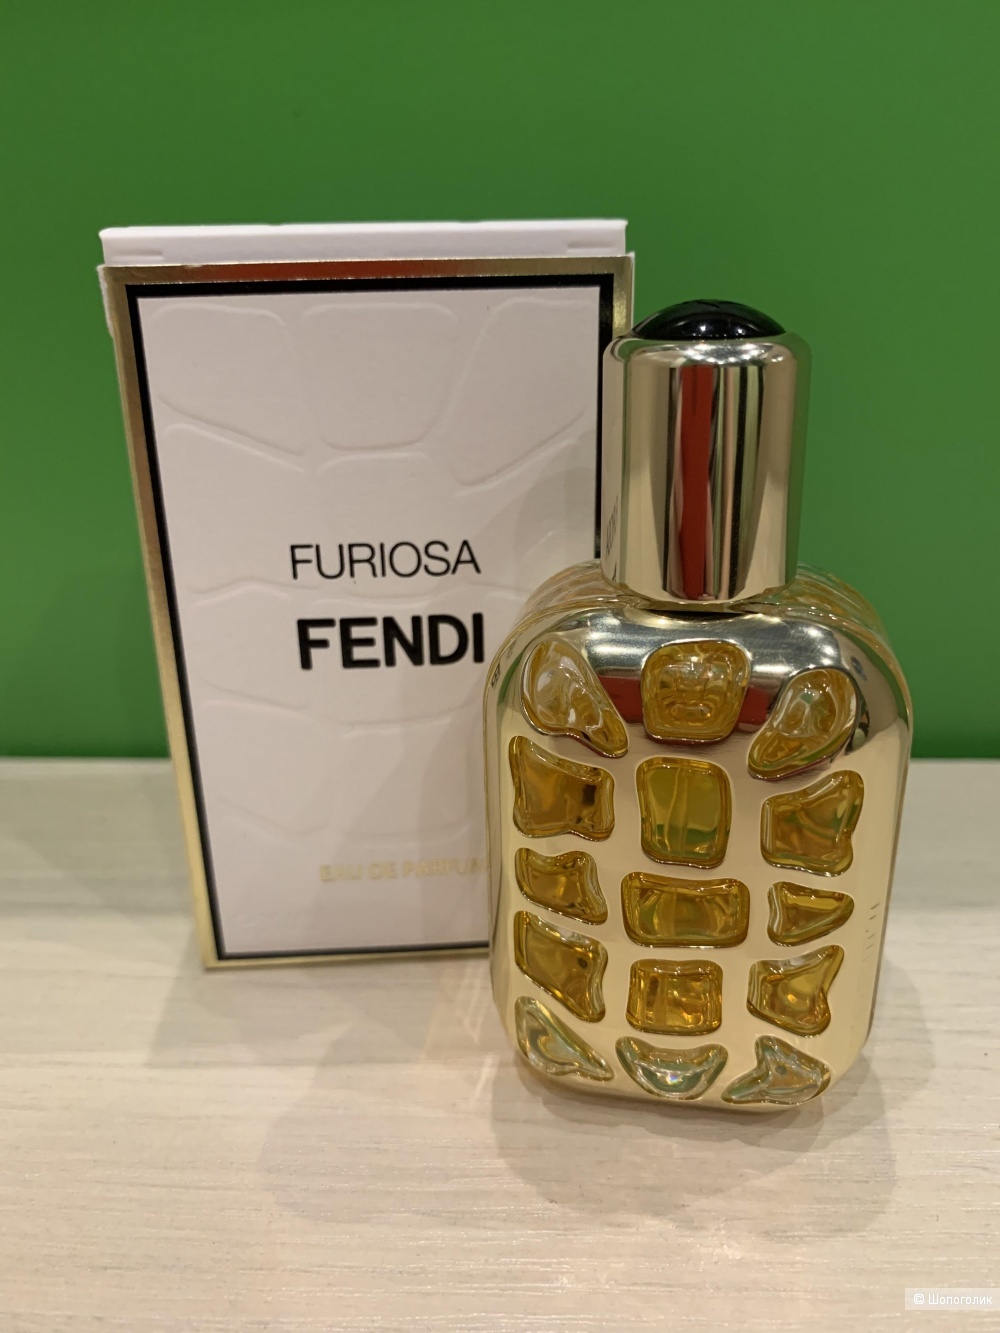 Fendi Furiosa 30 ml